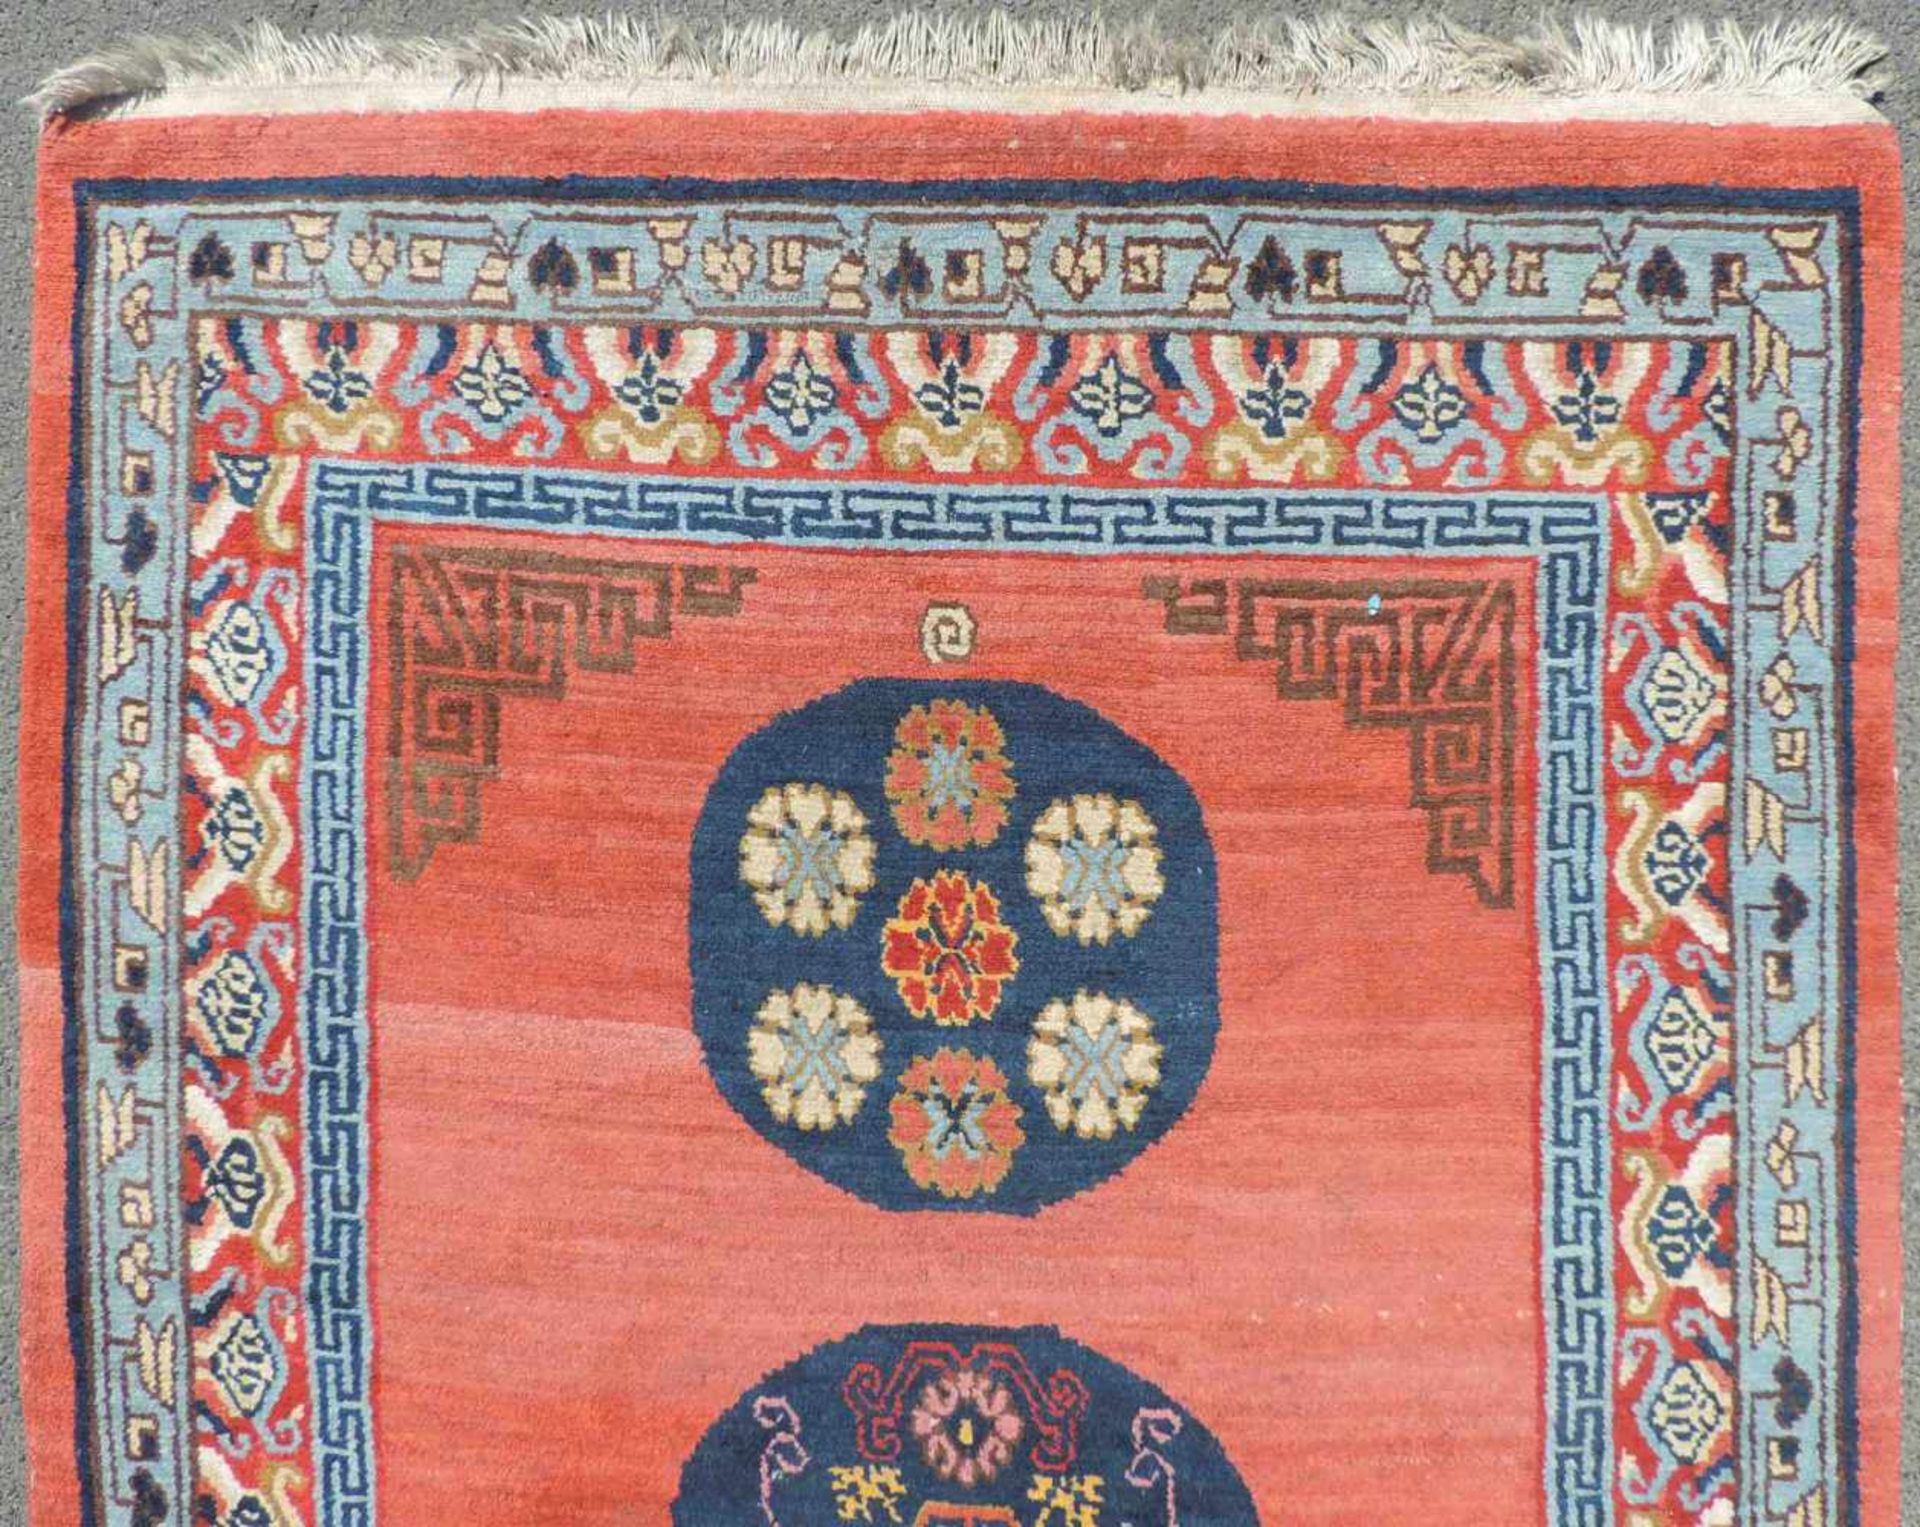 Khaden Meditationsteppich. Nepal / Tibet, Mitte 20. Jahrhundert. 192 cmx 126 cm. Handgeknüpft. Wolle - Bild 4 aus 6